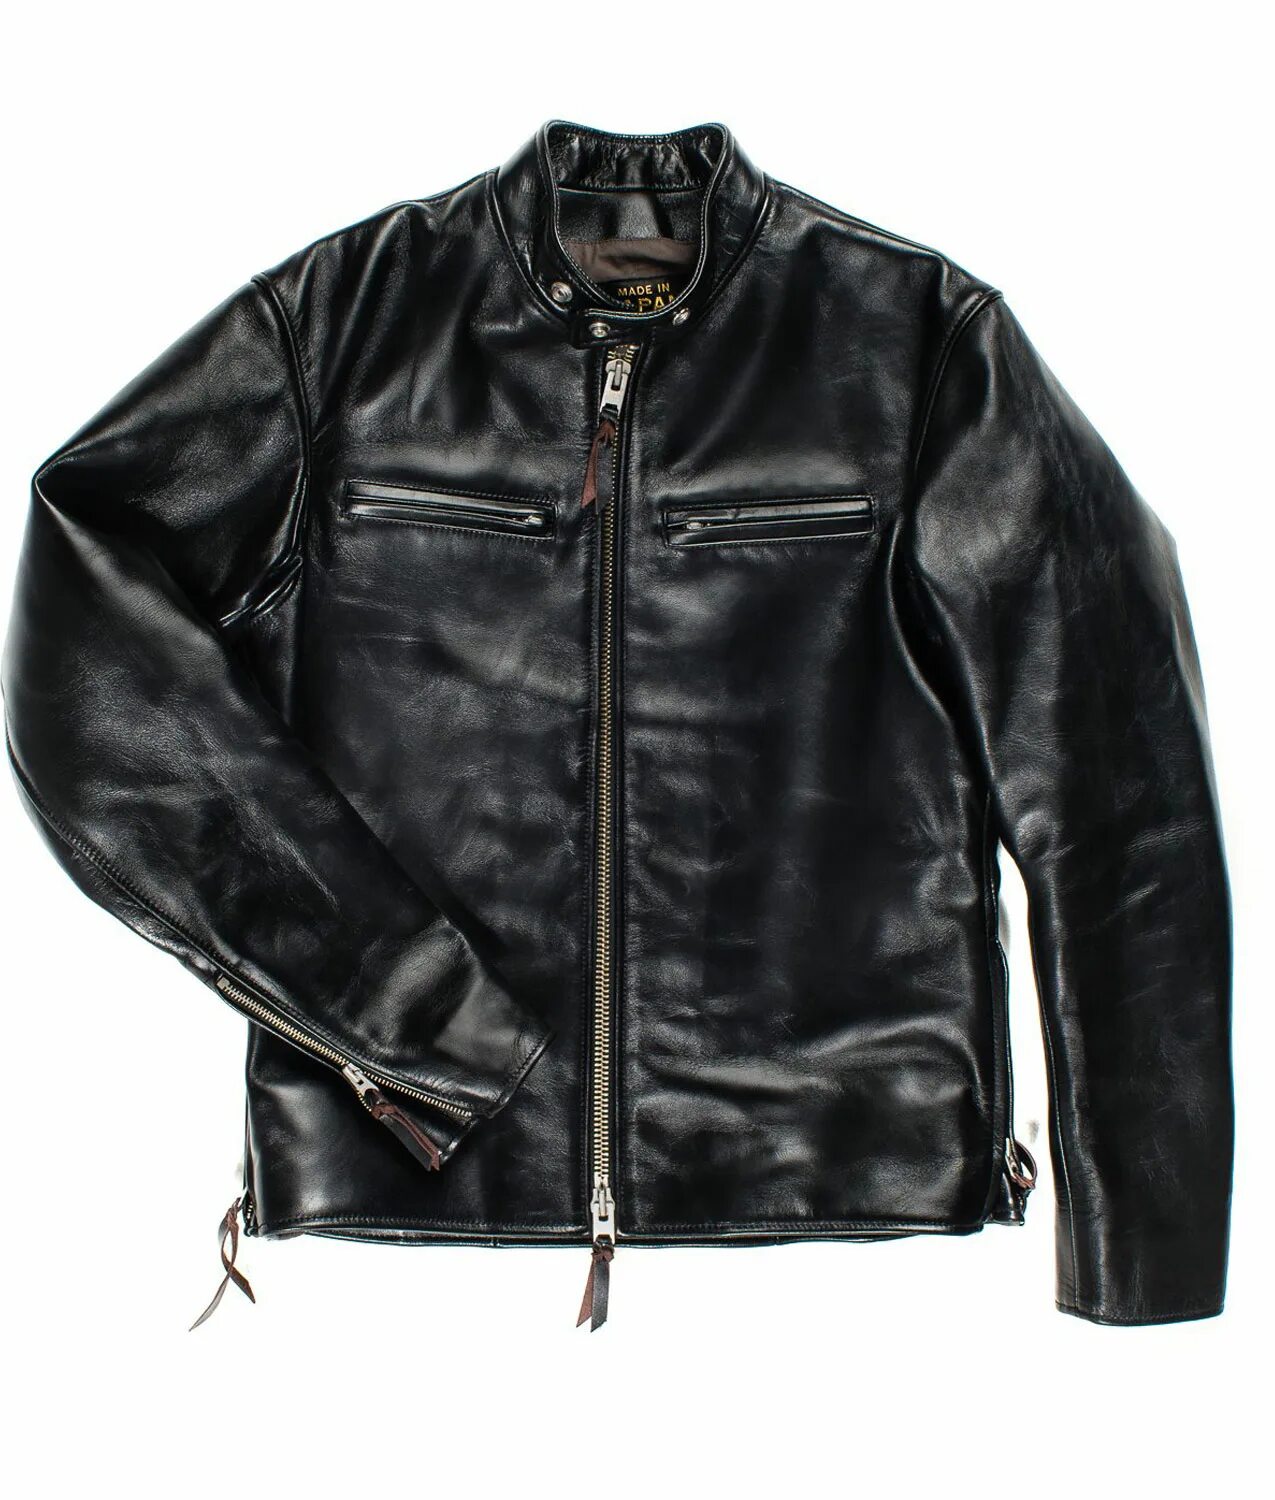 Iron Jacket. Измятая куртка. Iron Heart IHJ-124 Black. Как гладить кожаную куртку. Как разгладить кожу на куртке